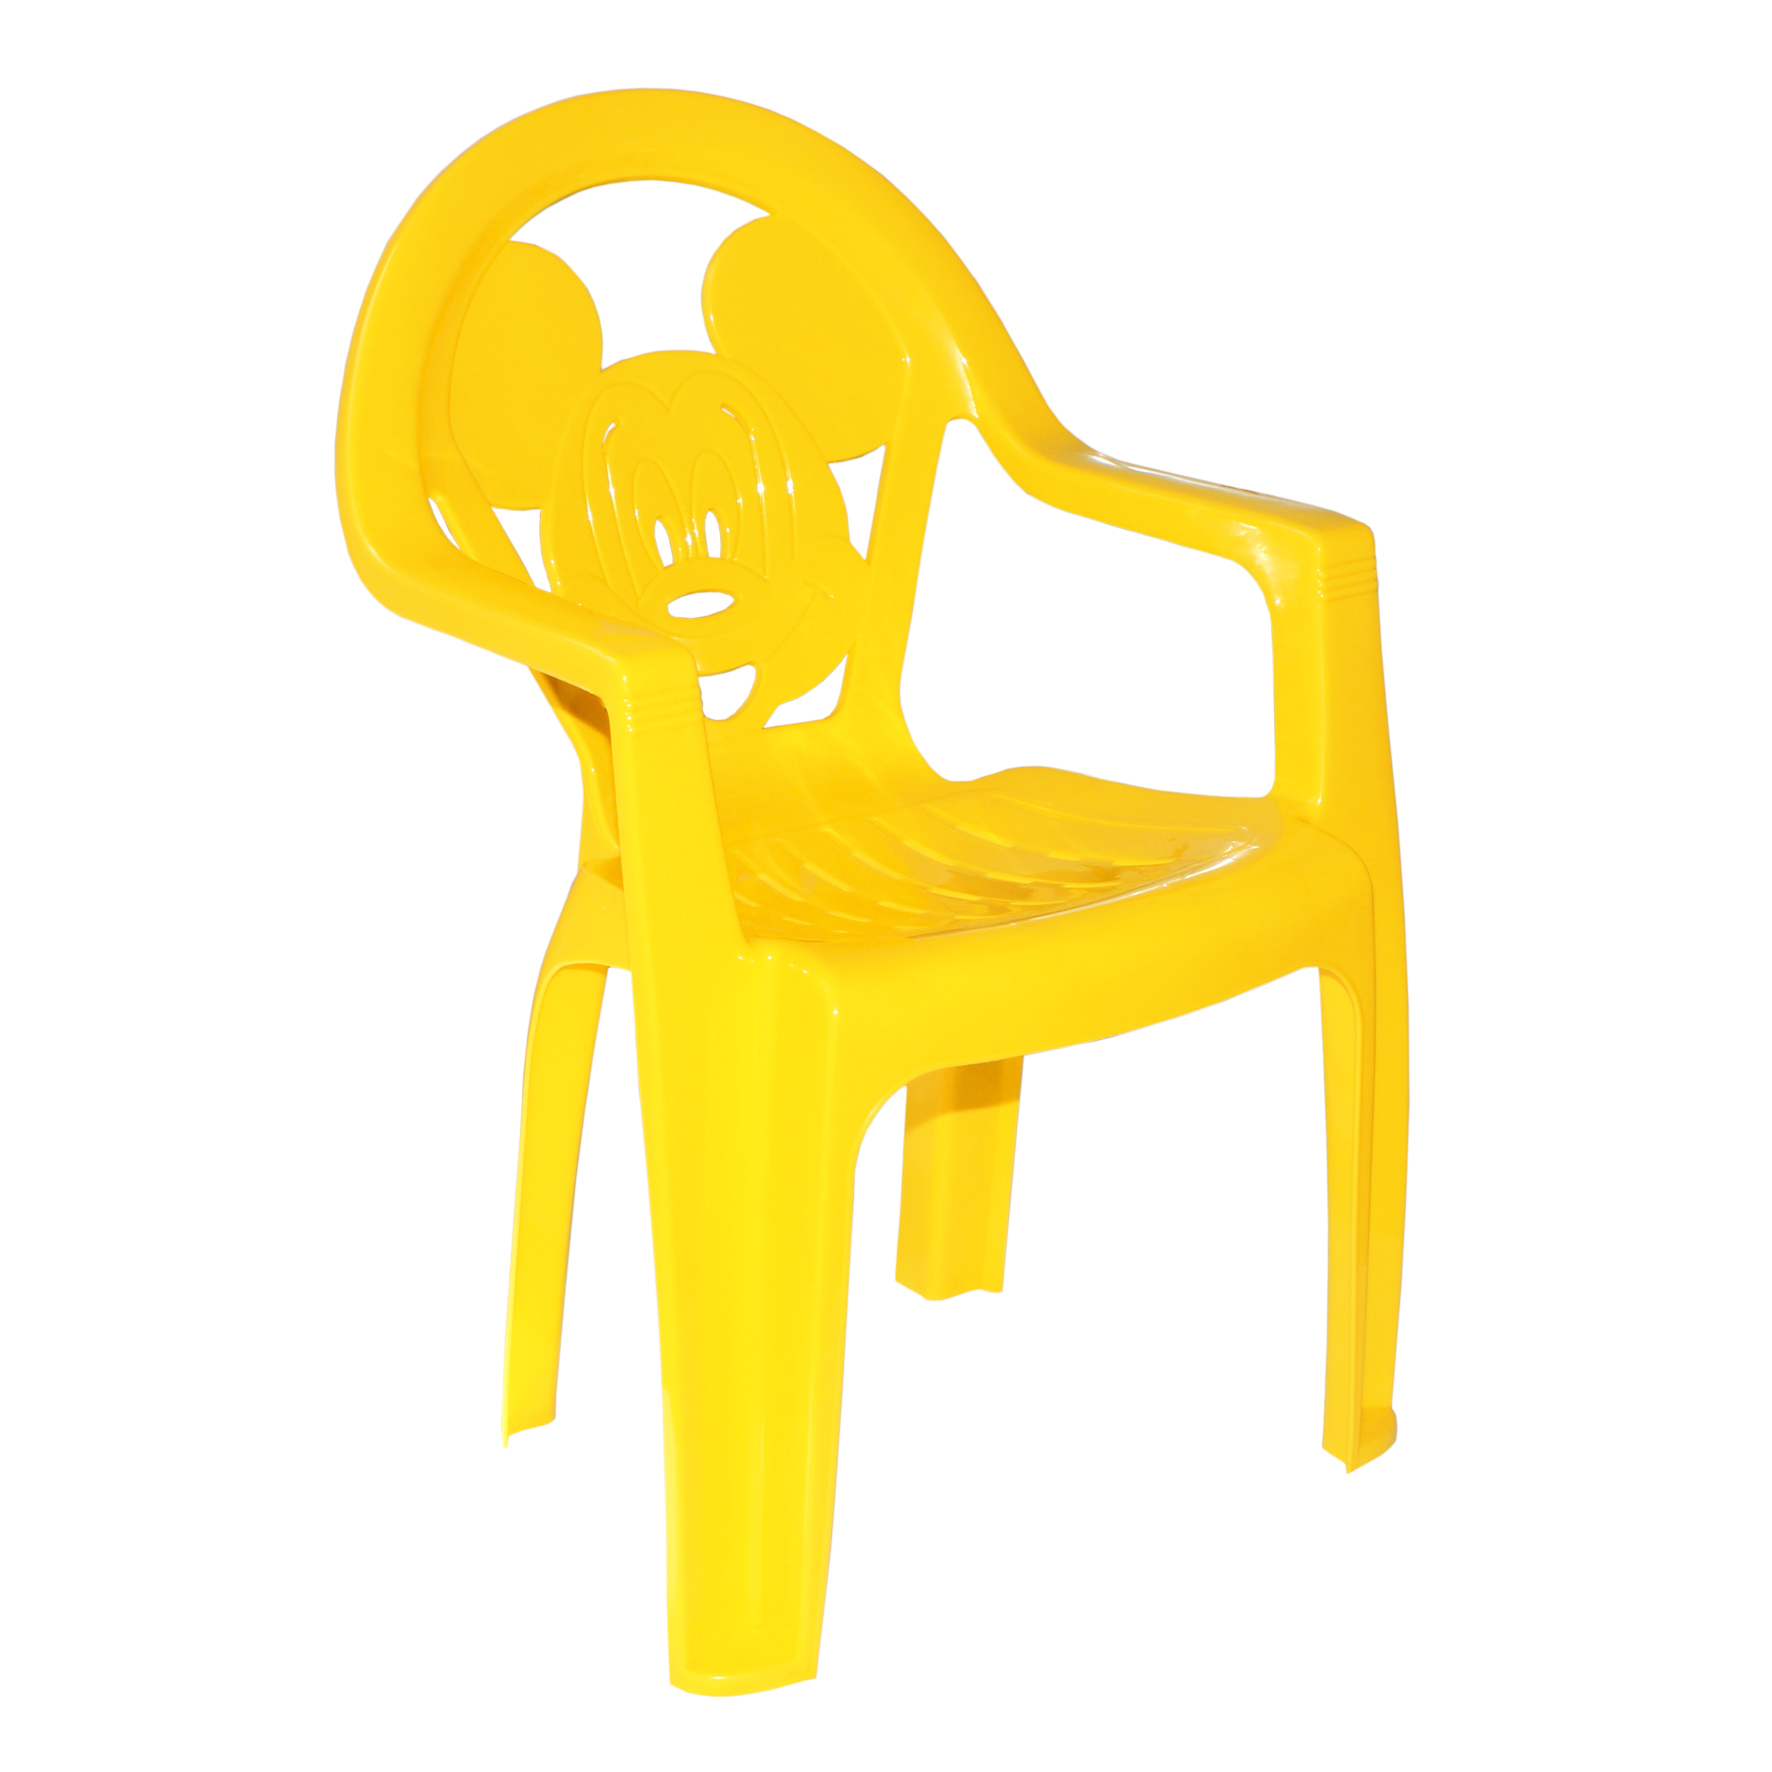  Фото №1 - Кресло детское желтое (1). Артикул: 05012 Милих